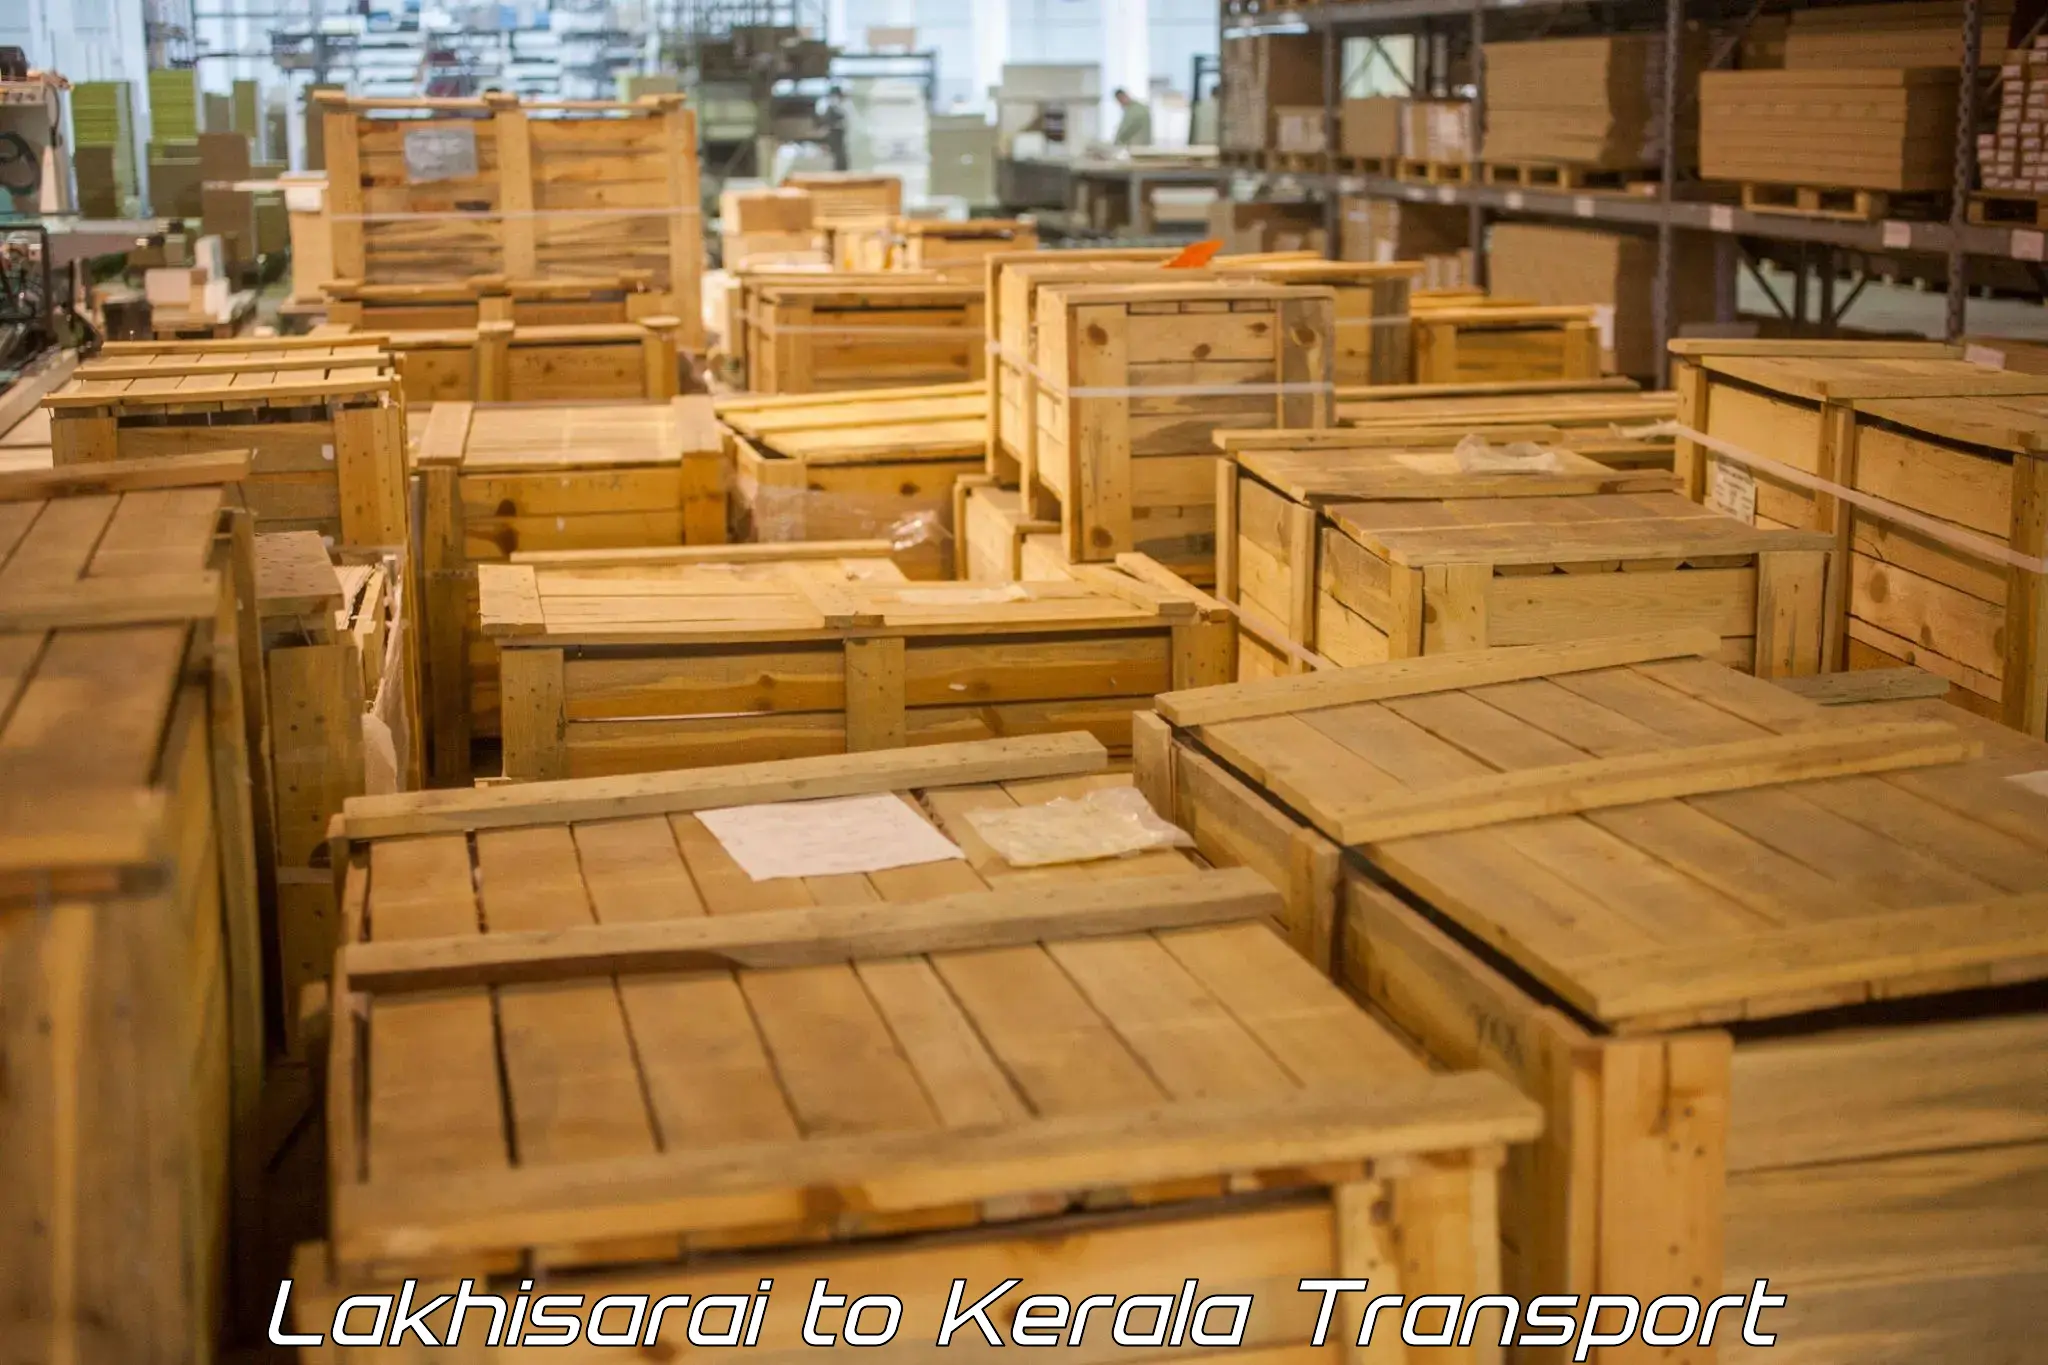 Container transportation services Lakhisarai to Kallikkad